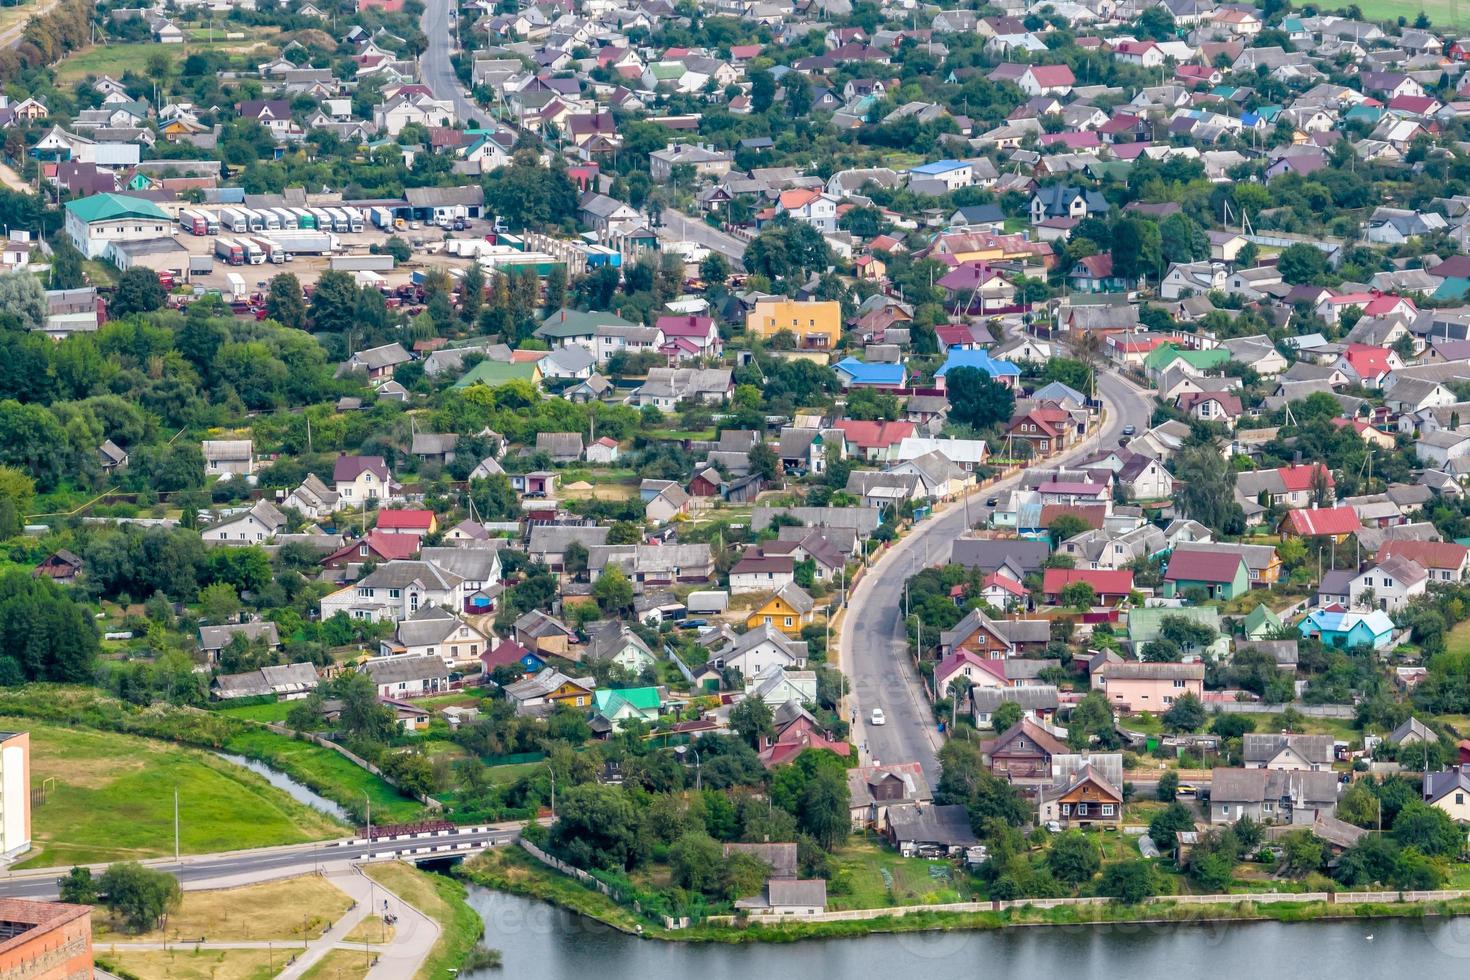 Luftpanoramablick auf das grüne Dorf mit Häusern, Scheunen und Schotterstraße im Wald foto